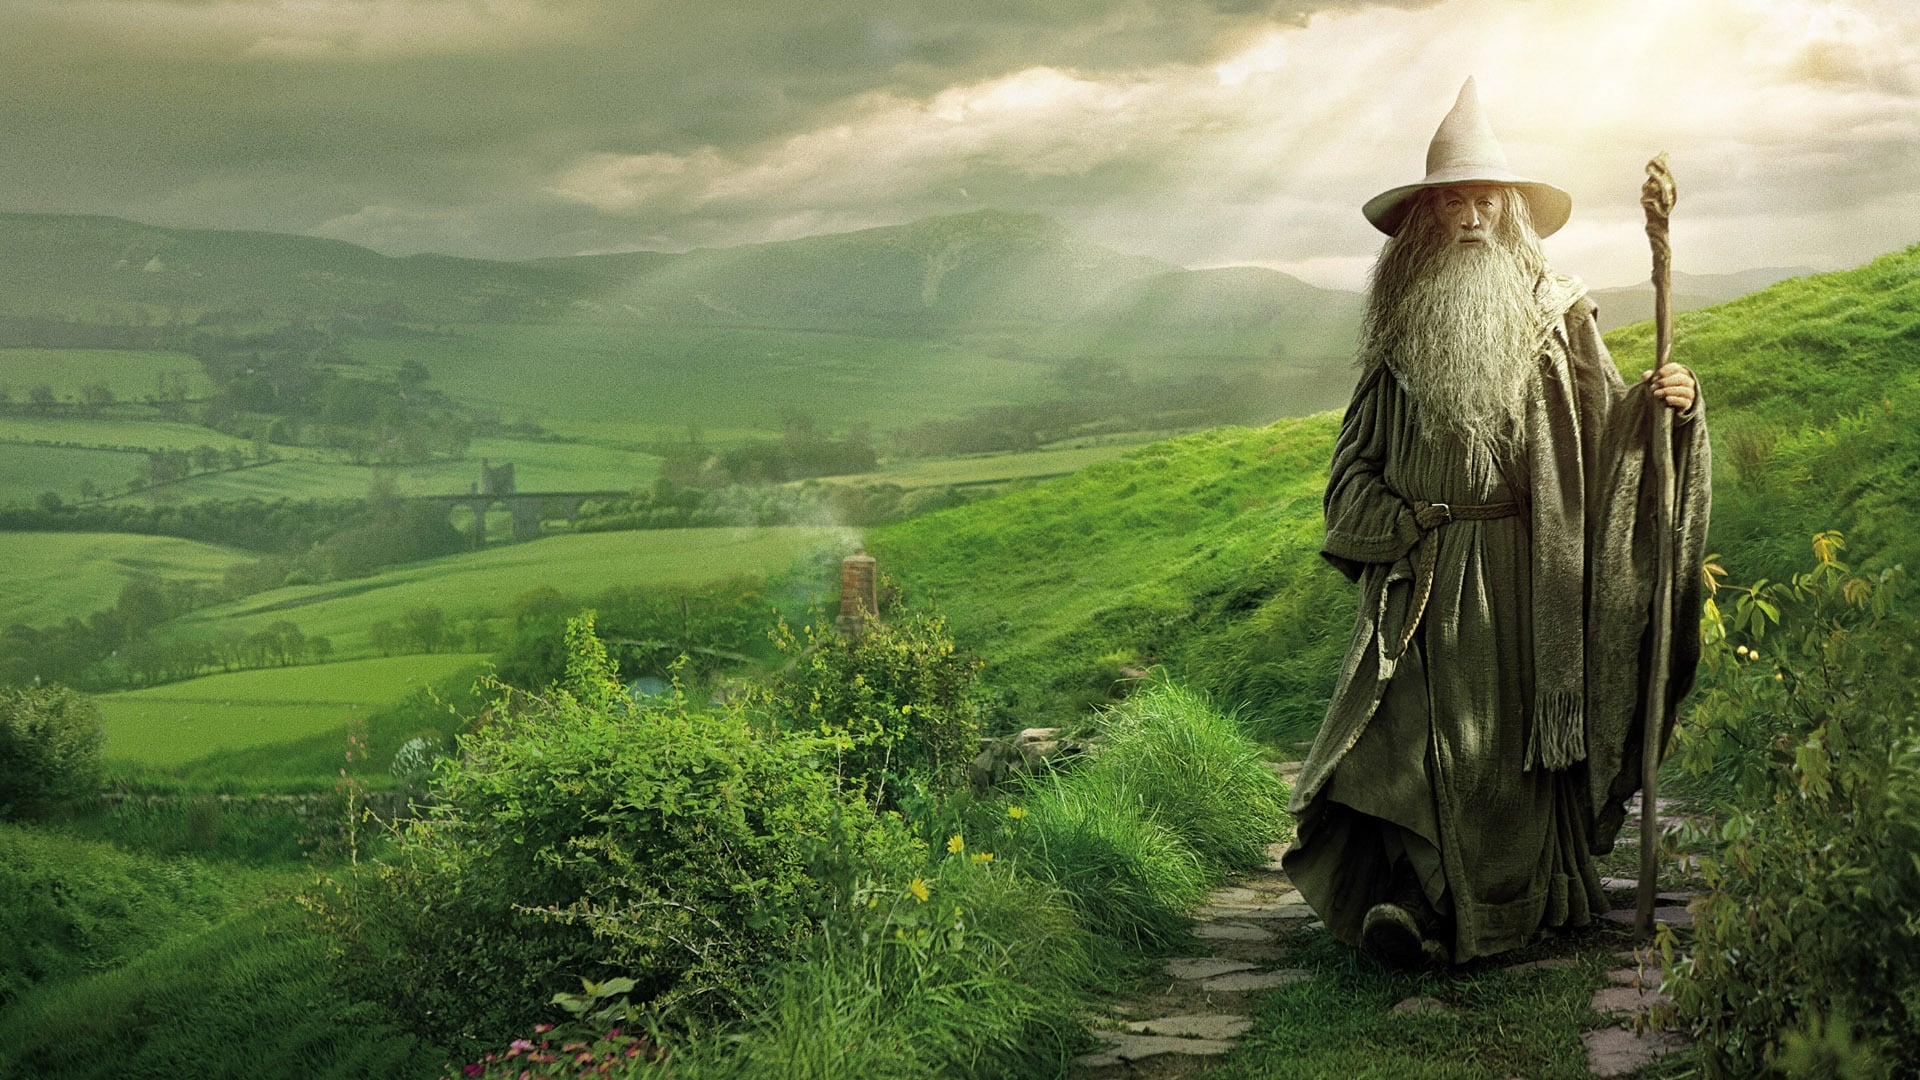 The Hobbit: An Unexpected Journey (The Hobbit: An Unexpected Journey)